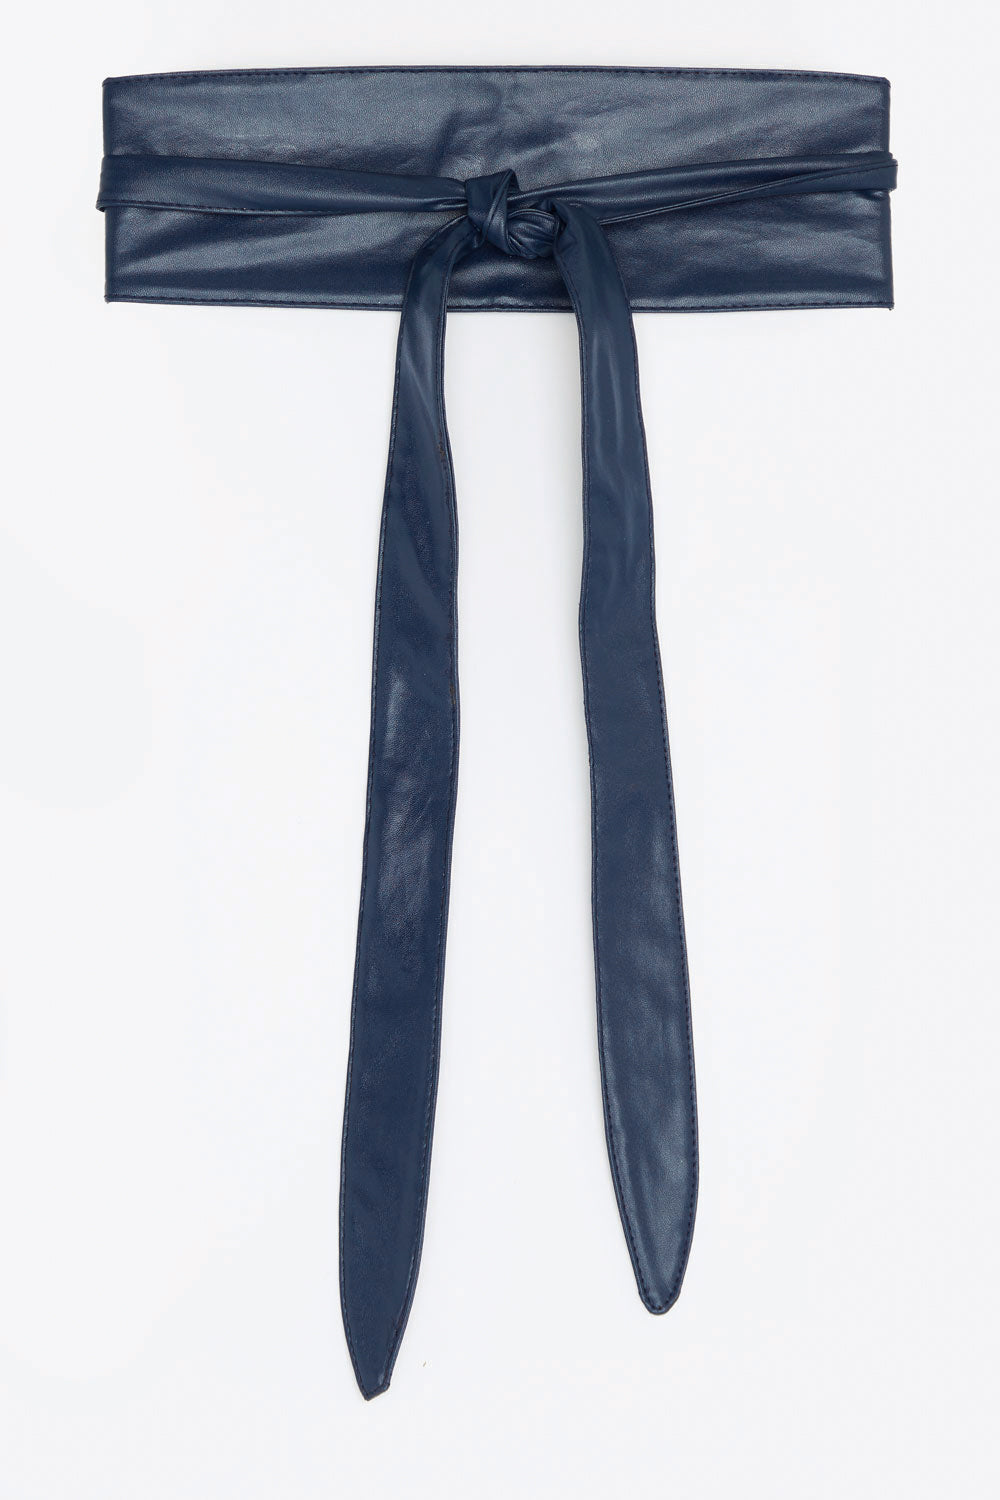 Wrap and Tie Belt - Navy